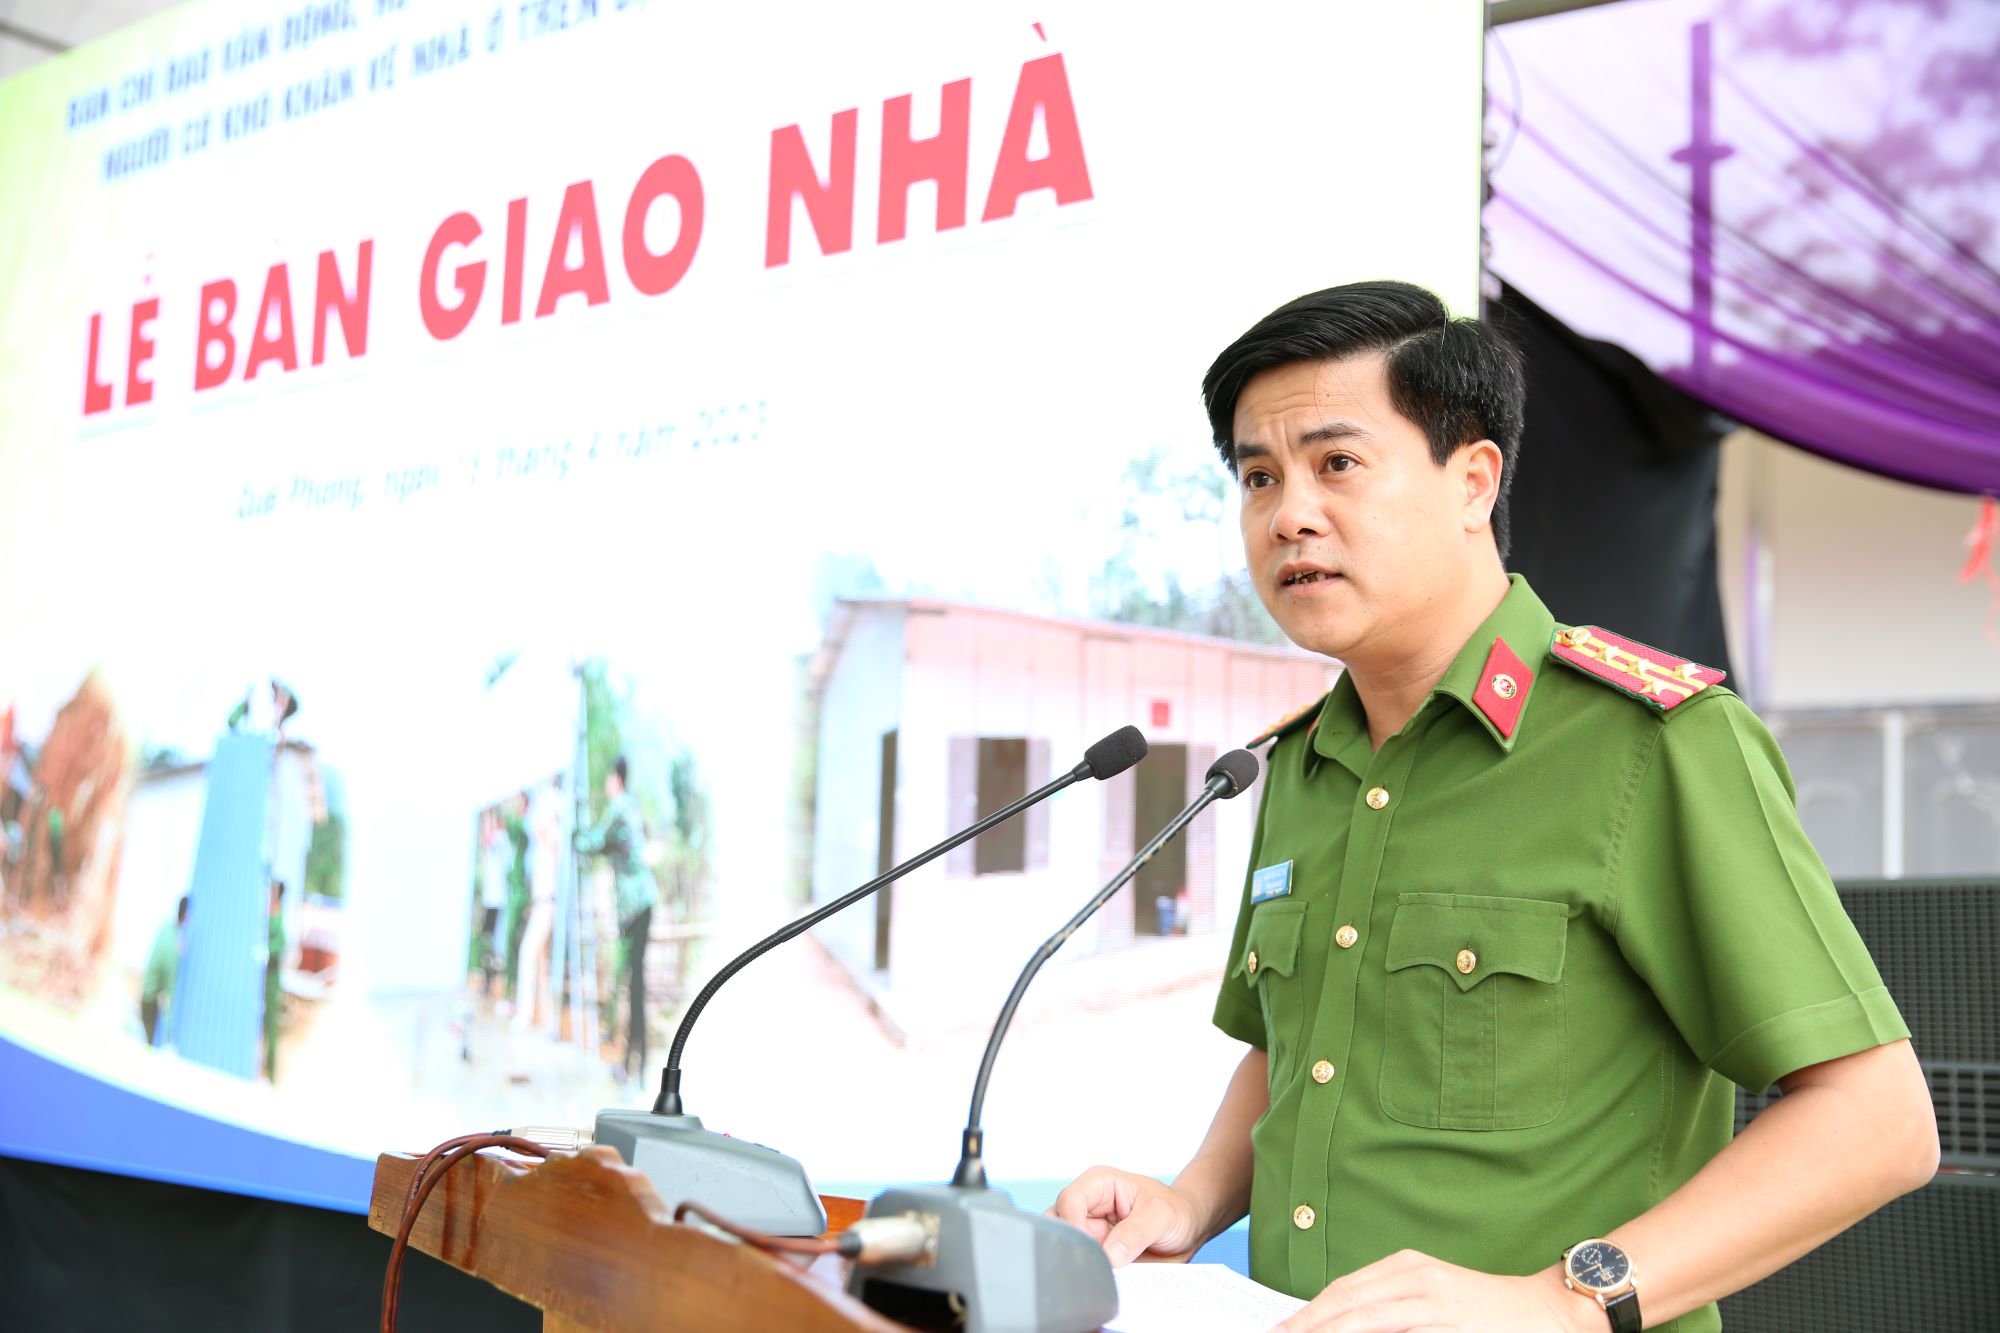 Đồng chí Đại tá Nguyễn Đức Hải - Phó Giám đốc Công an tỉnh báo cáo tóm tắt quá trình xây dựng nhà cho người nghèo, người có khó khăn về nhà ở